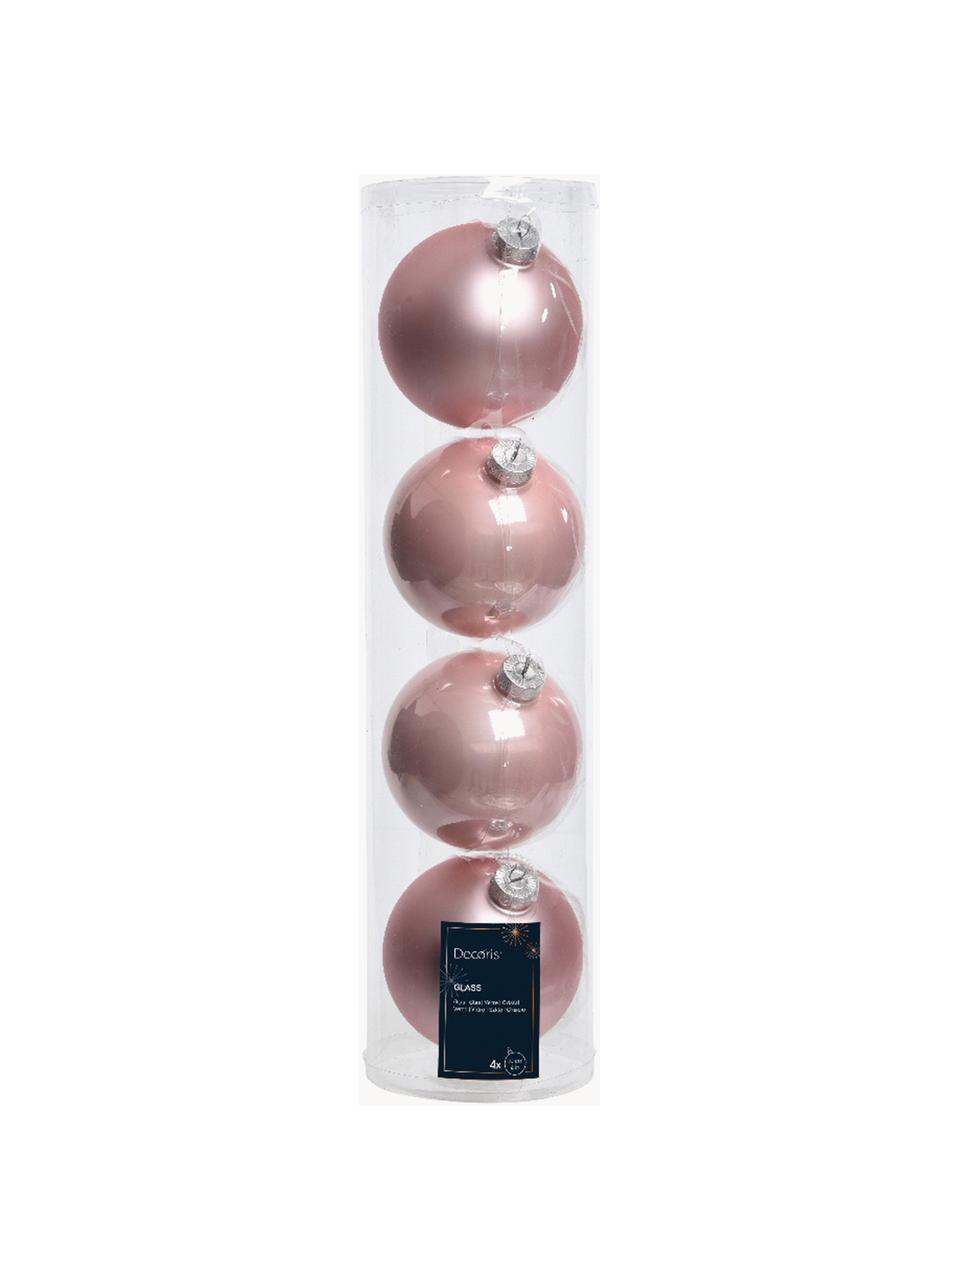 Boules de Noël Evergreen, sets de différentes tailles, Rose pâle, Ø 10 cm, 4 pièces